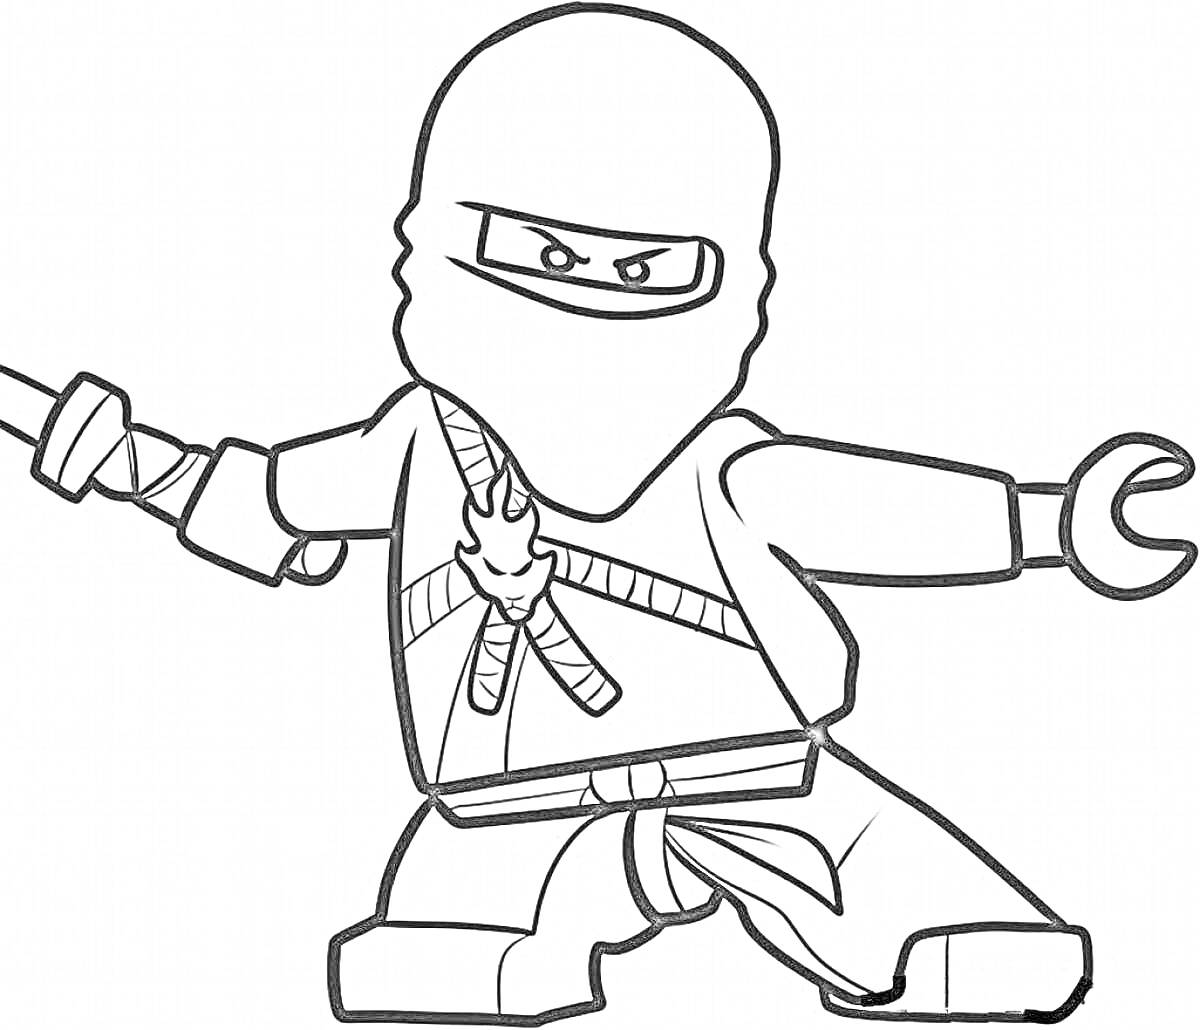 Раскраска Ниндзя с широким мечом, в маске, с поясным ремнем и детализированным костюмом